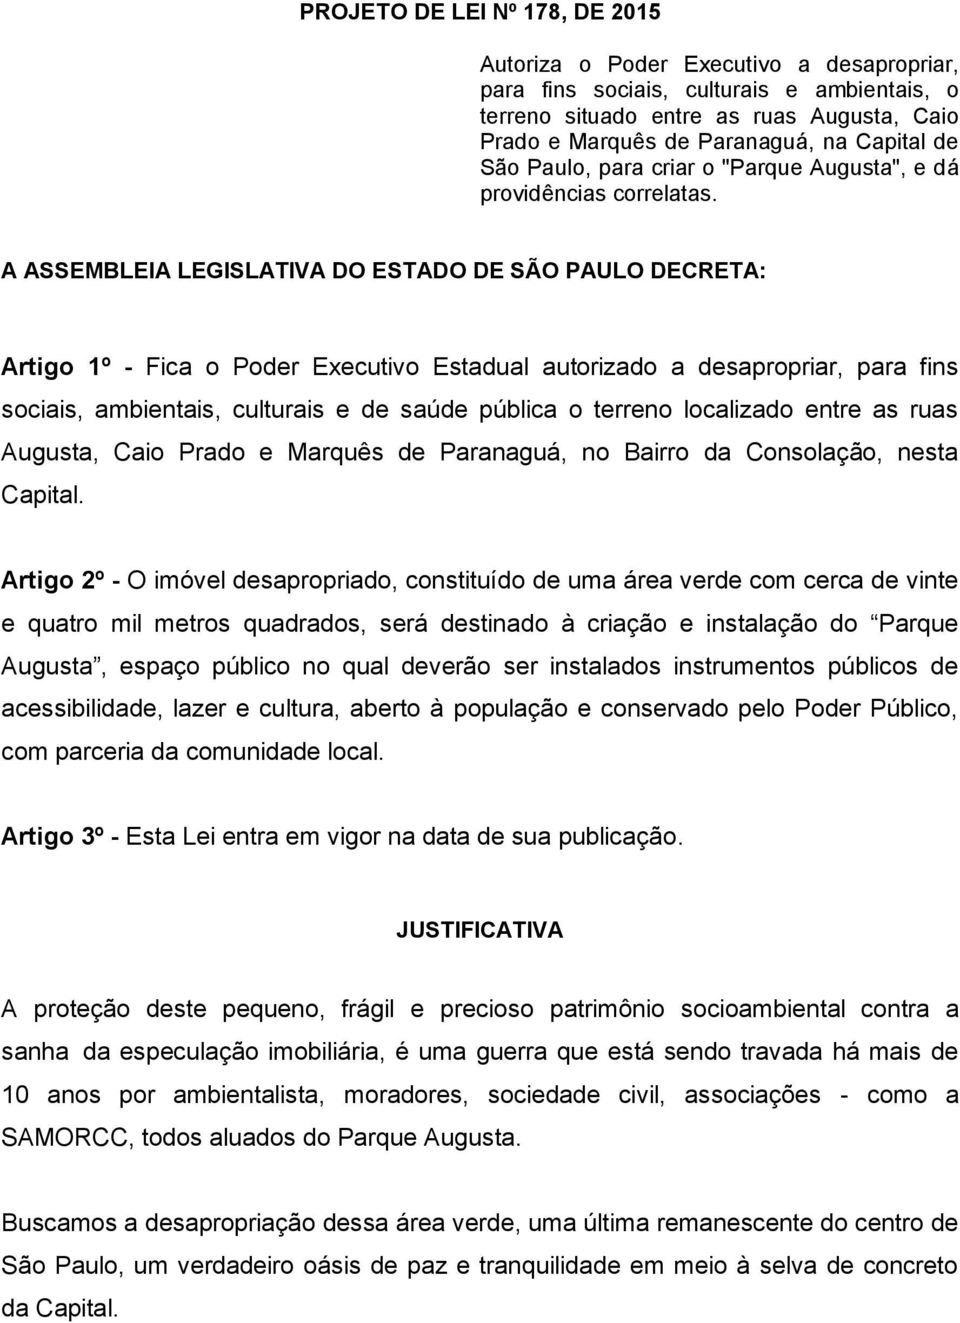 A ASSEMBLEIA LEGISLATIVA DO ESTADO DE SÃO PAULO DECRETA: Artigo 1º - Fica o Poder Executivo Estadual autorizado a desapropriar, para fins sociais, ambientais, culturais e de saúde pública o terreno